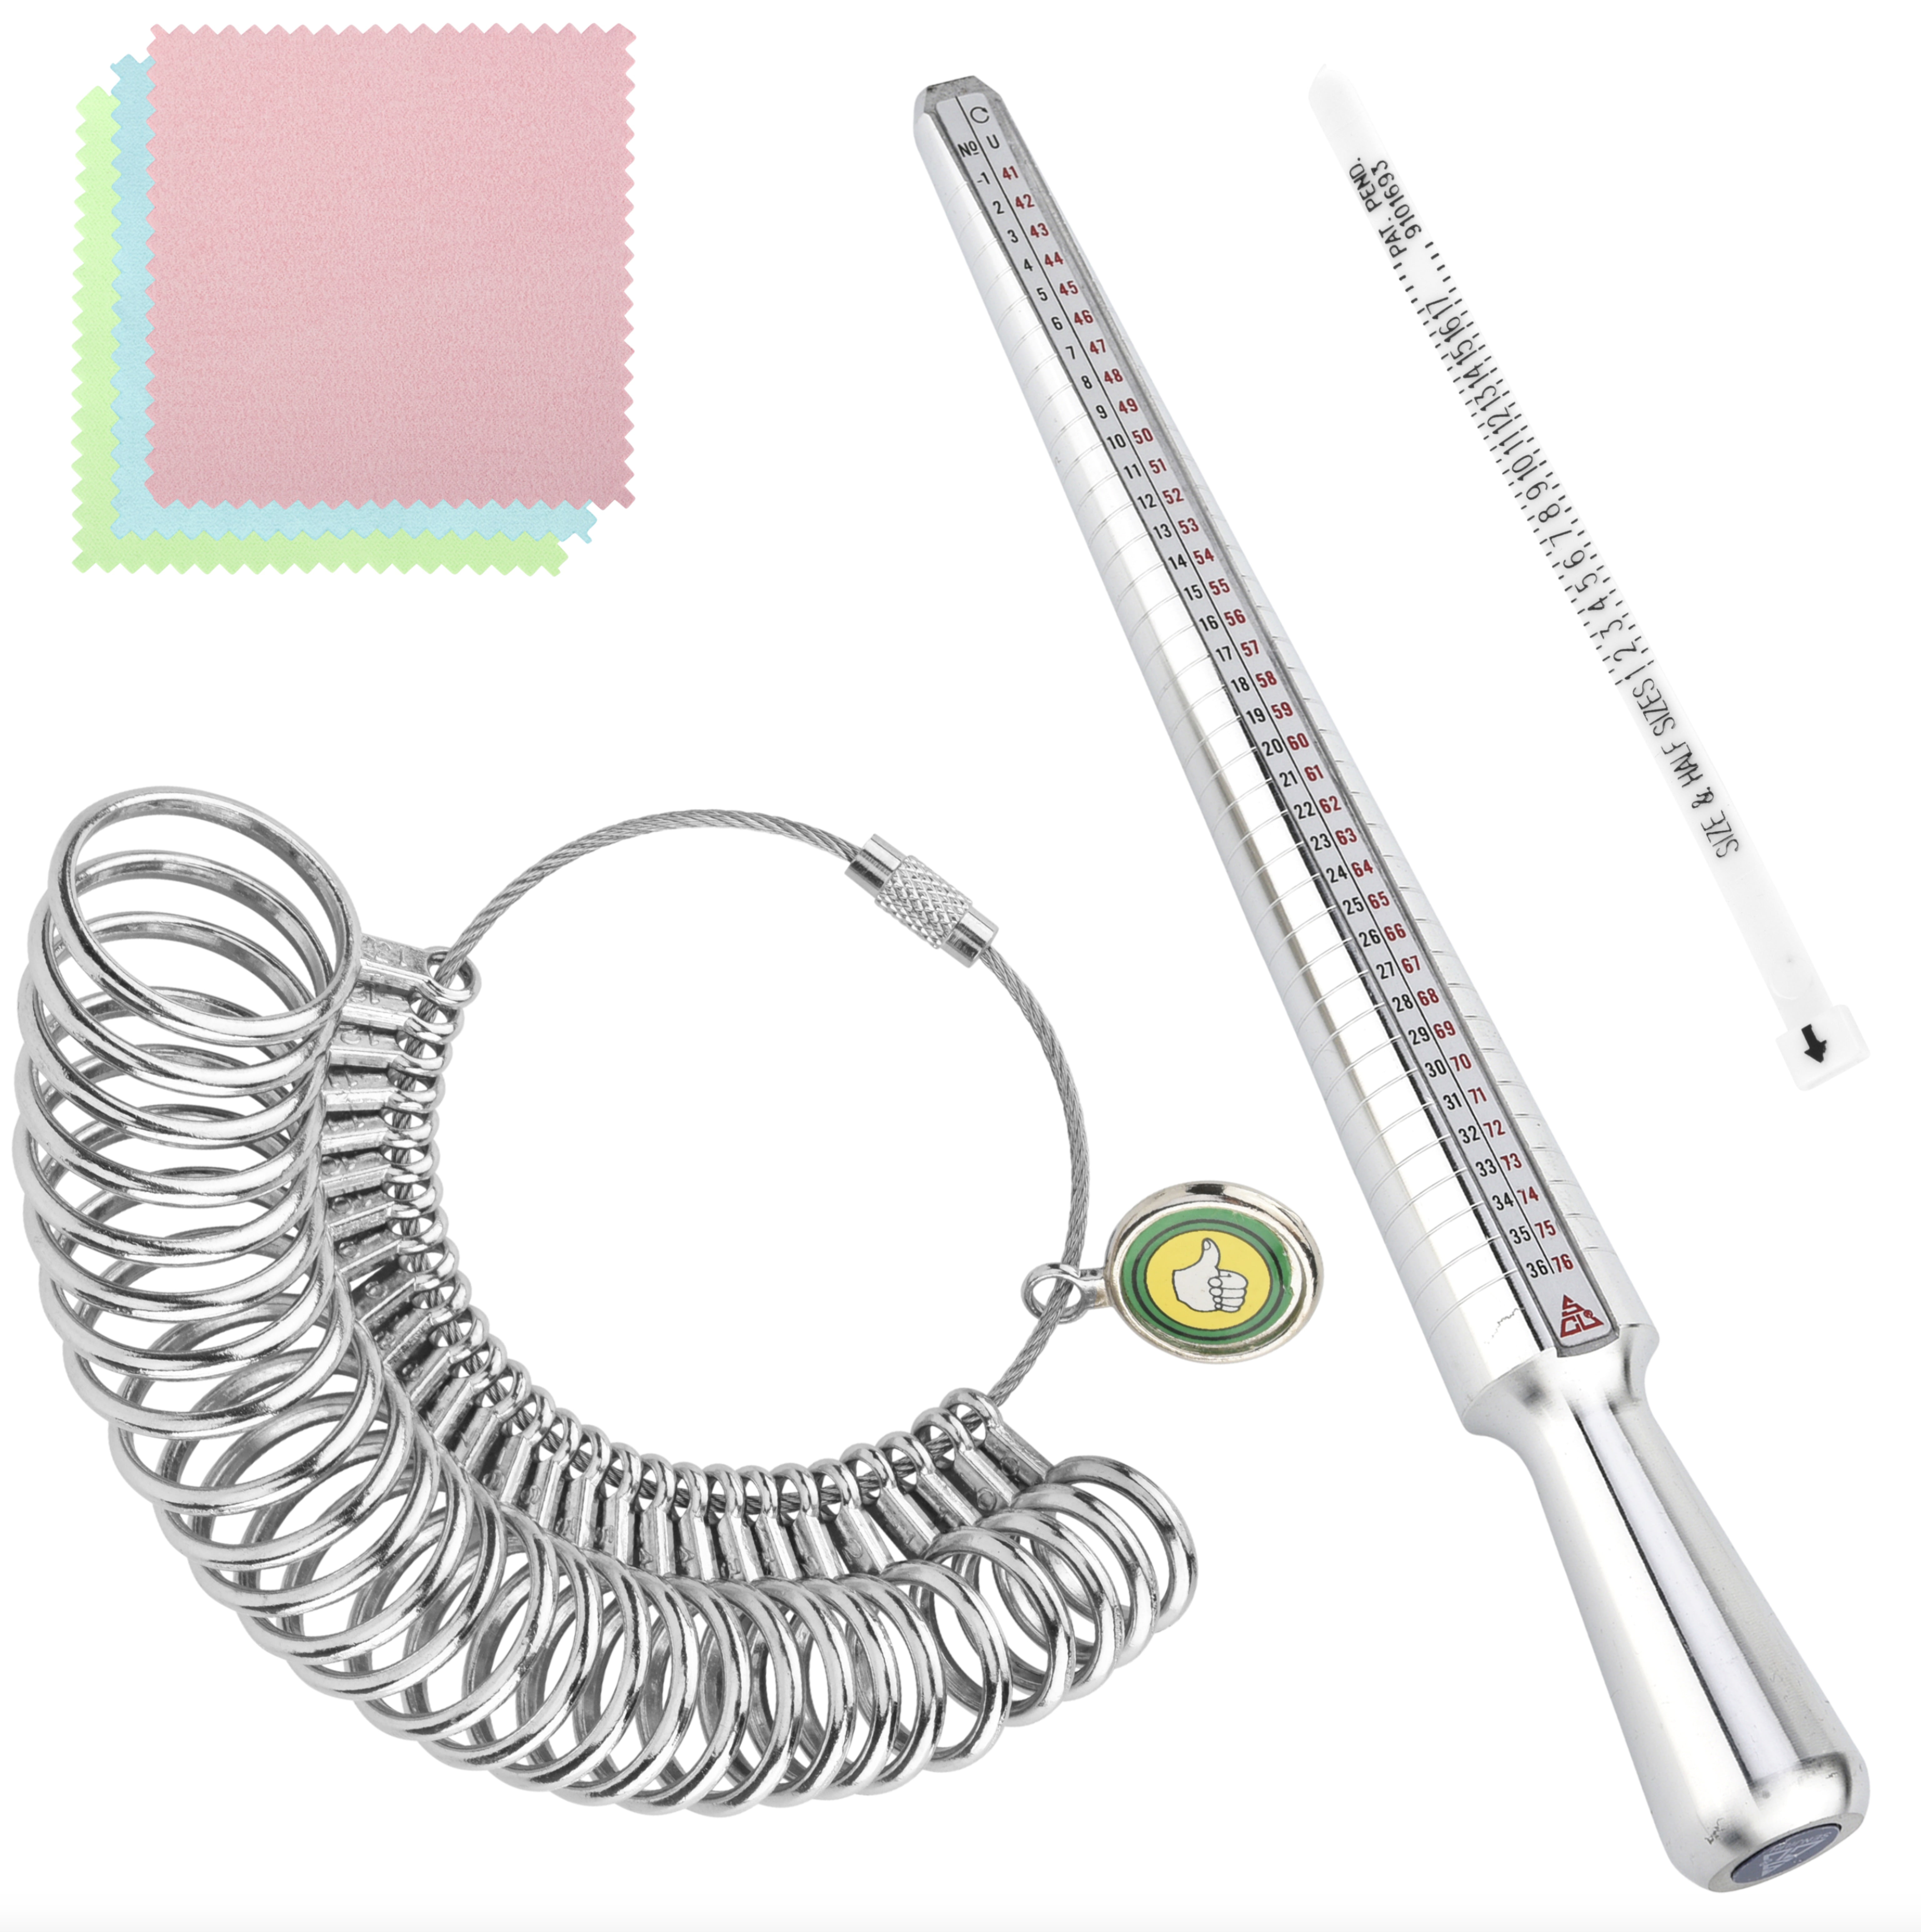 Ring Measuring Tools Set: Ring Sizer Stick, Ring Mandrel, Ring Sizer Guage,  Ring Magnifier